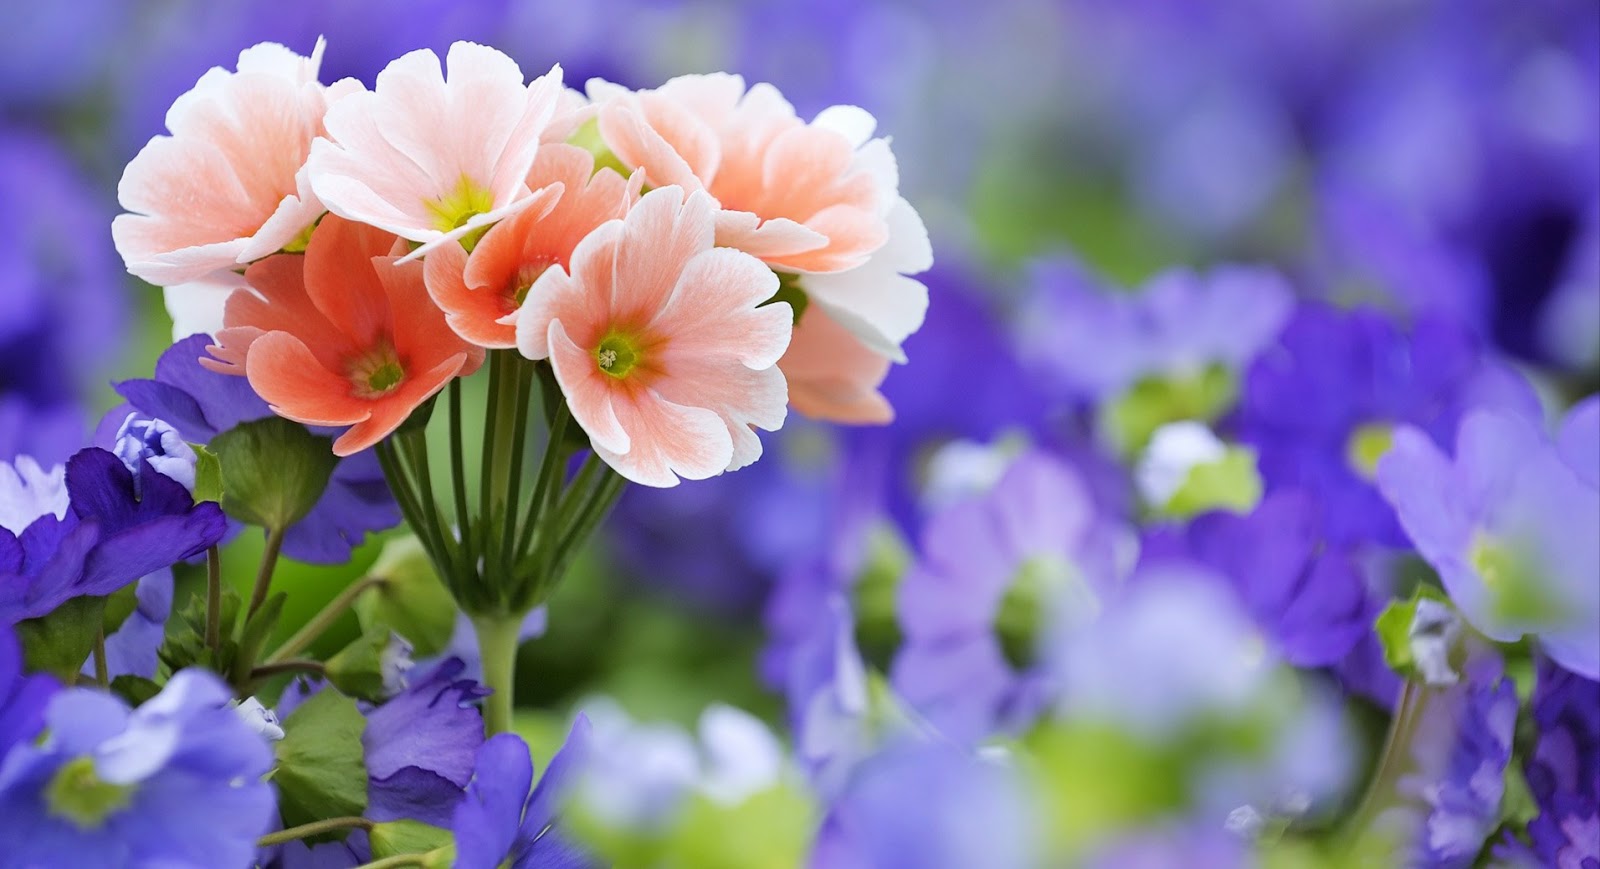 Gambar Bunga Indah dan Cantik | Kumpulan Gambar